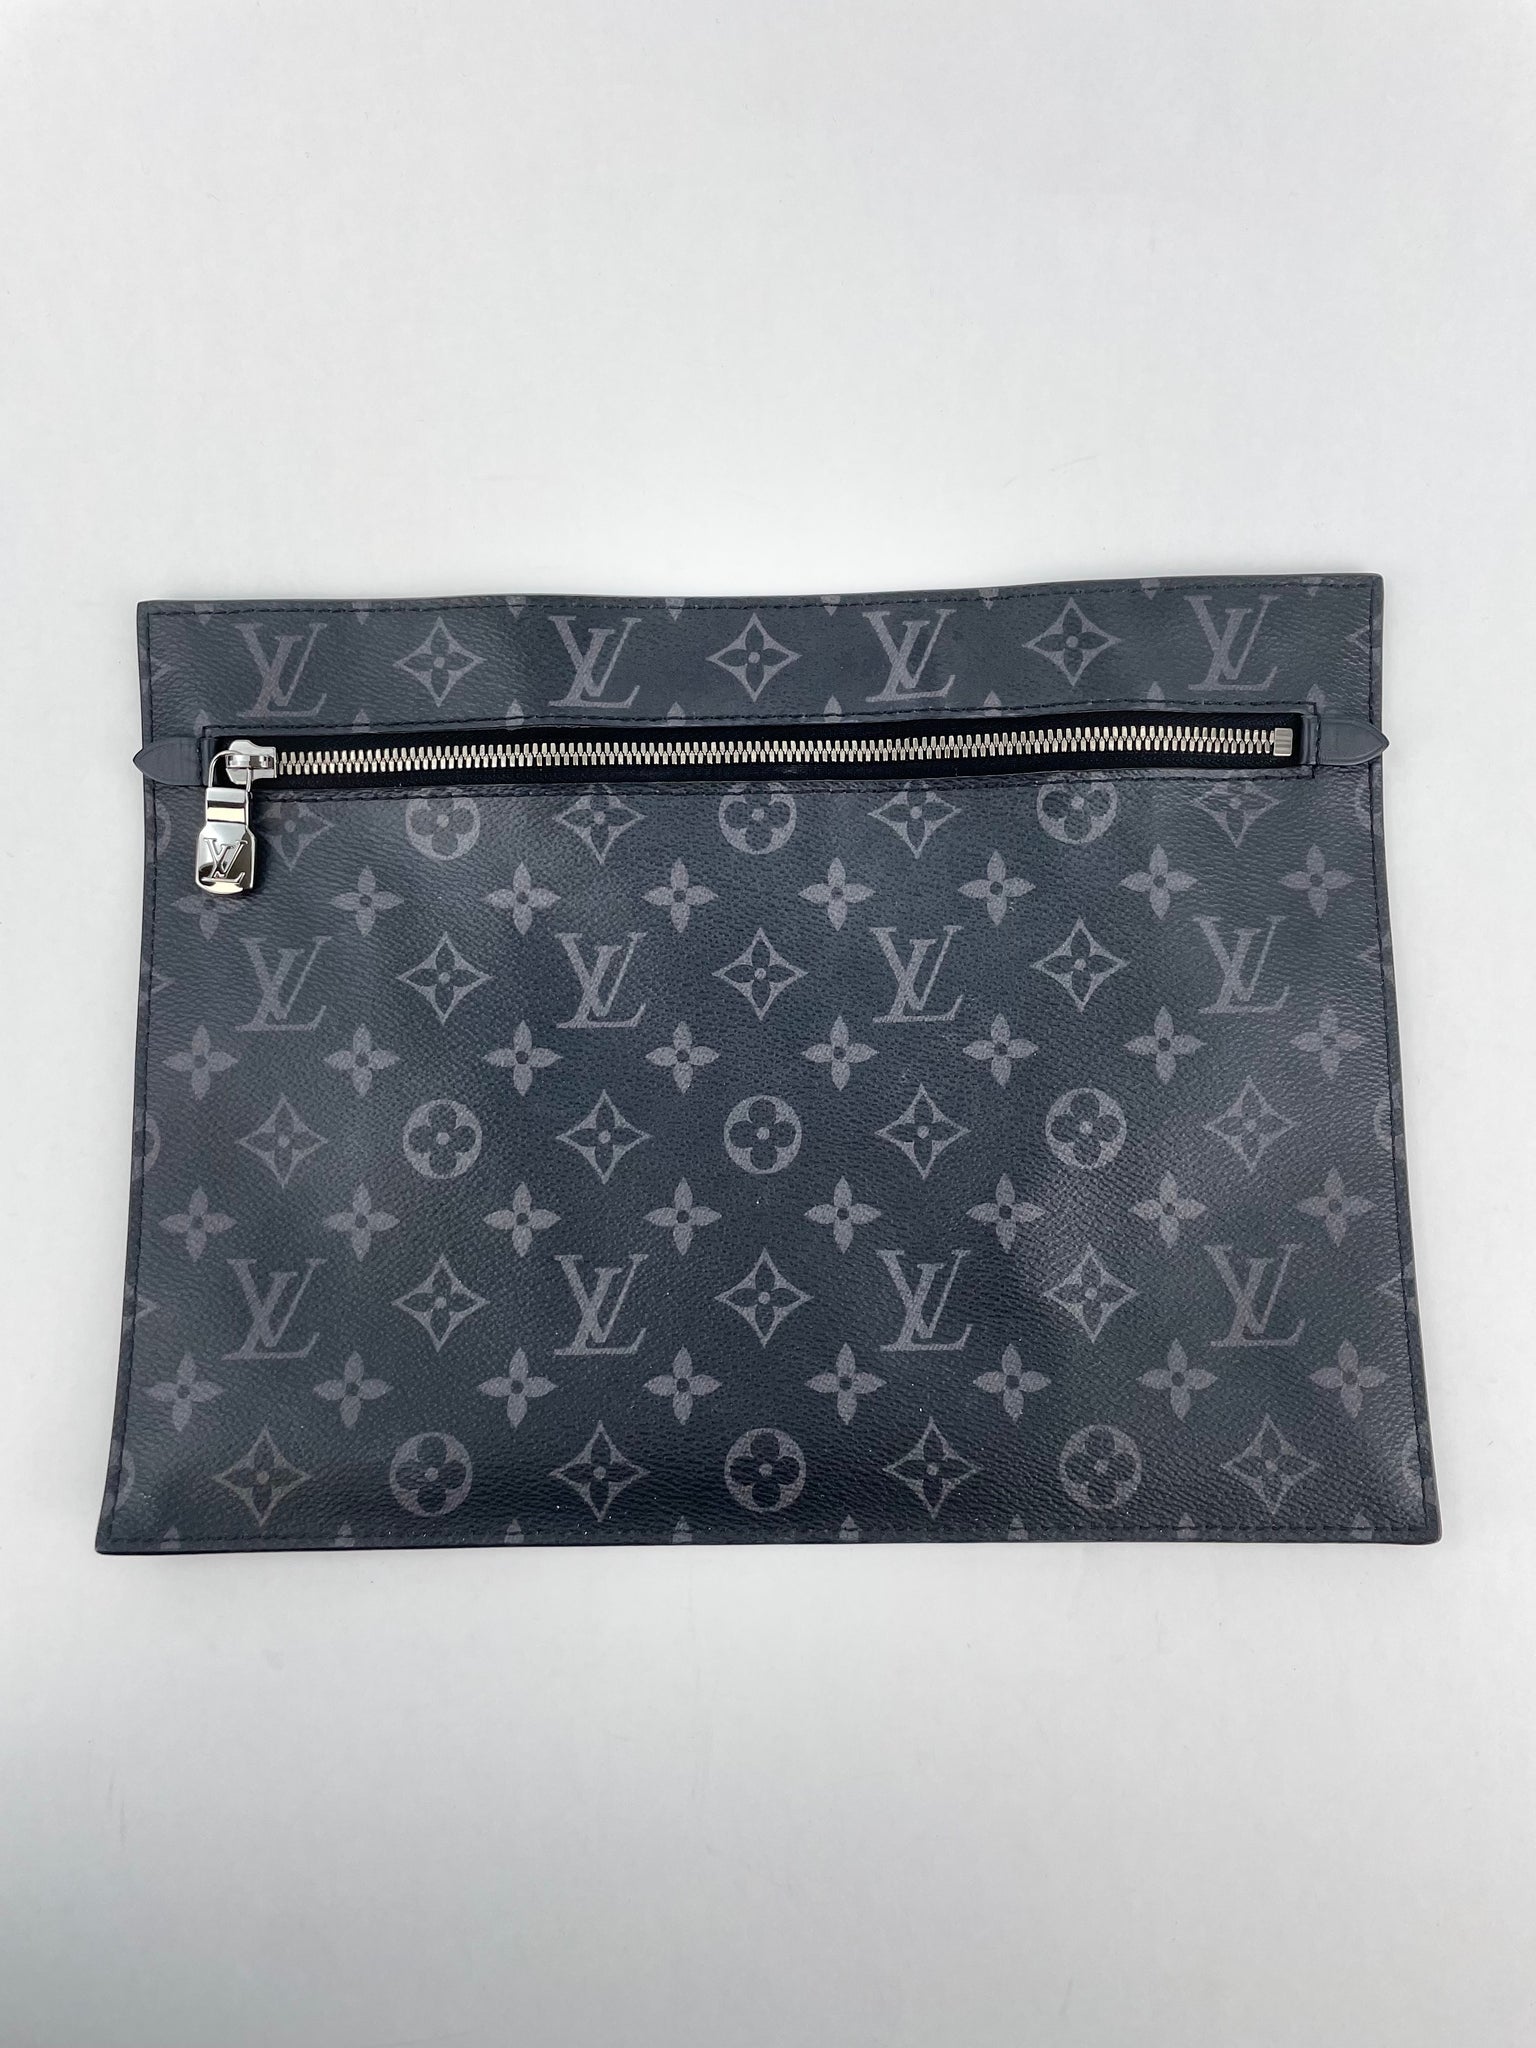 Grand sac à dos femme authentique Louis Vuitton monogramme